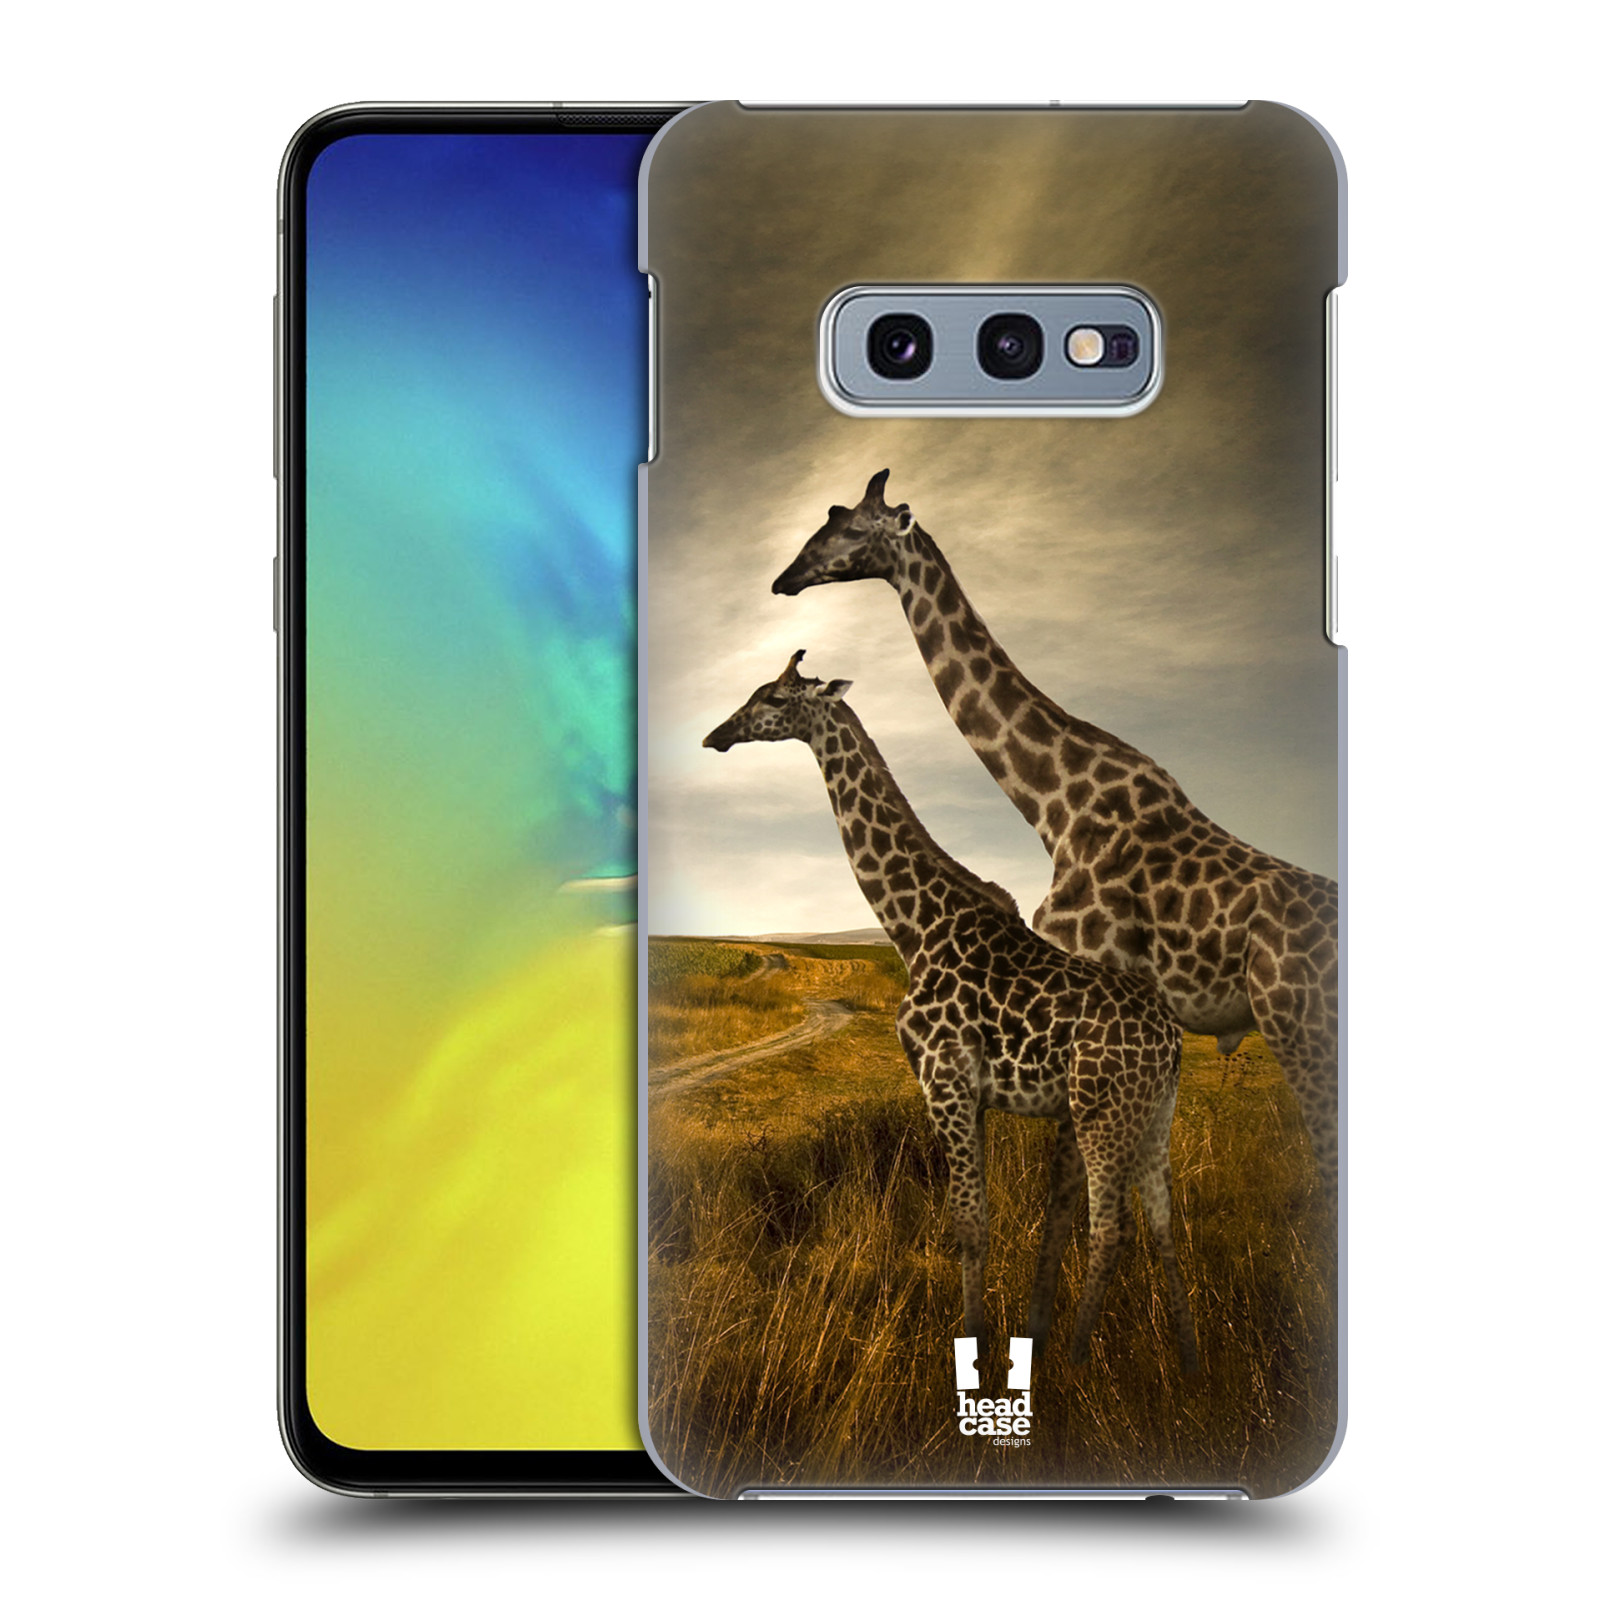 Zadní obal pro mobil Samsung Galaxy S10e - HEAD CASE - Svět zvířat žirafy